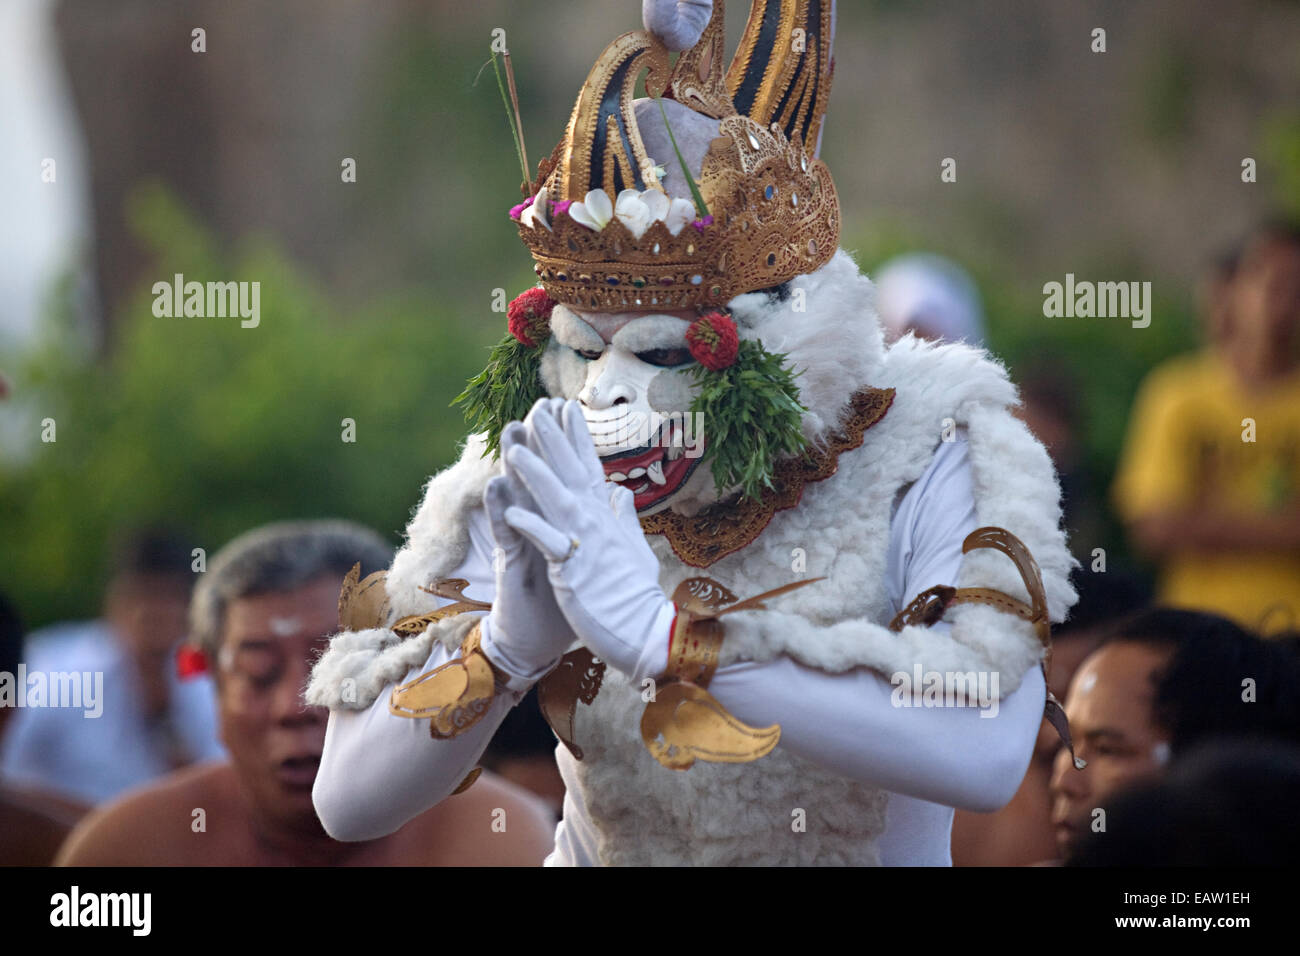 Mann in weißen Affen Kostüm führt während Kecak-Tanz in Uluwatu Tempel  Uluwatu Bali Indonesien Stockfotografie - Alamy